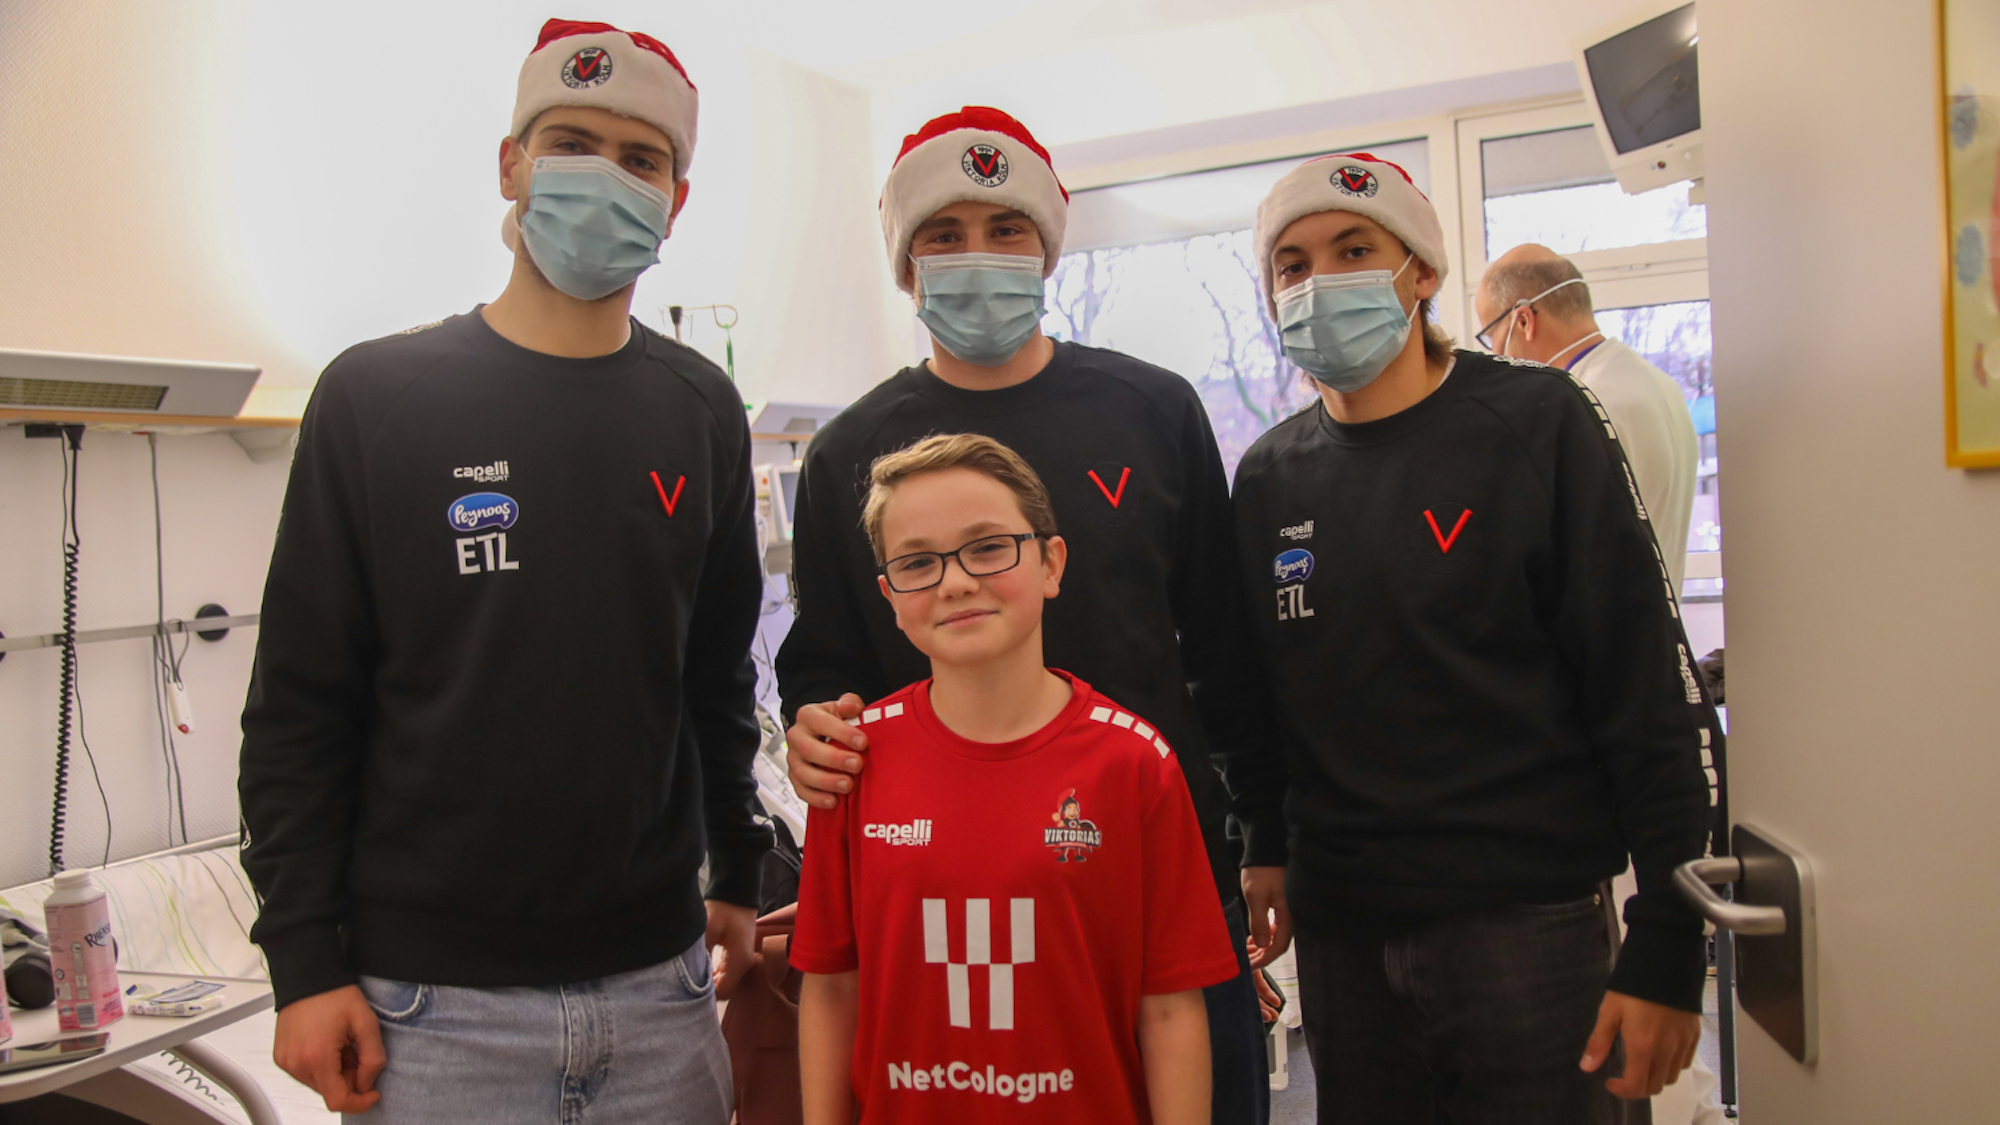 Deri junge Männer in schwarzen Pullovern, mit Weihnachtsmützen und OP-Masken und ein Junge mit Brille in einem roten T-Shirt stehenvor einem Krankenhausbett.